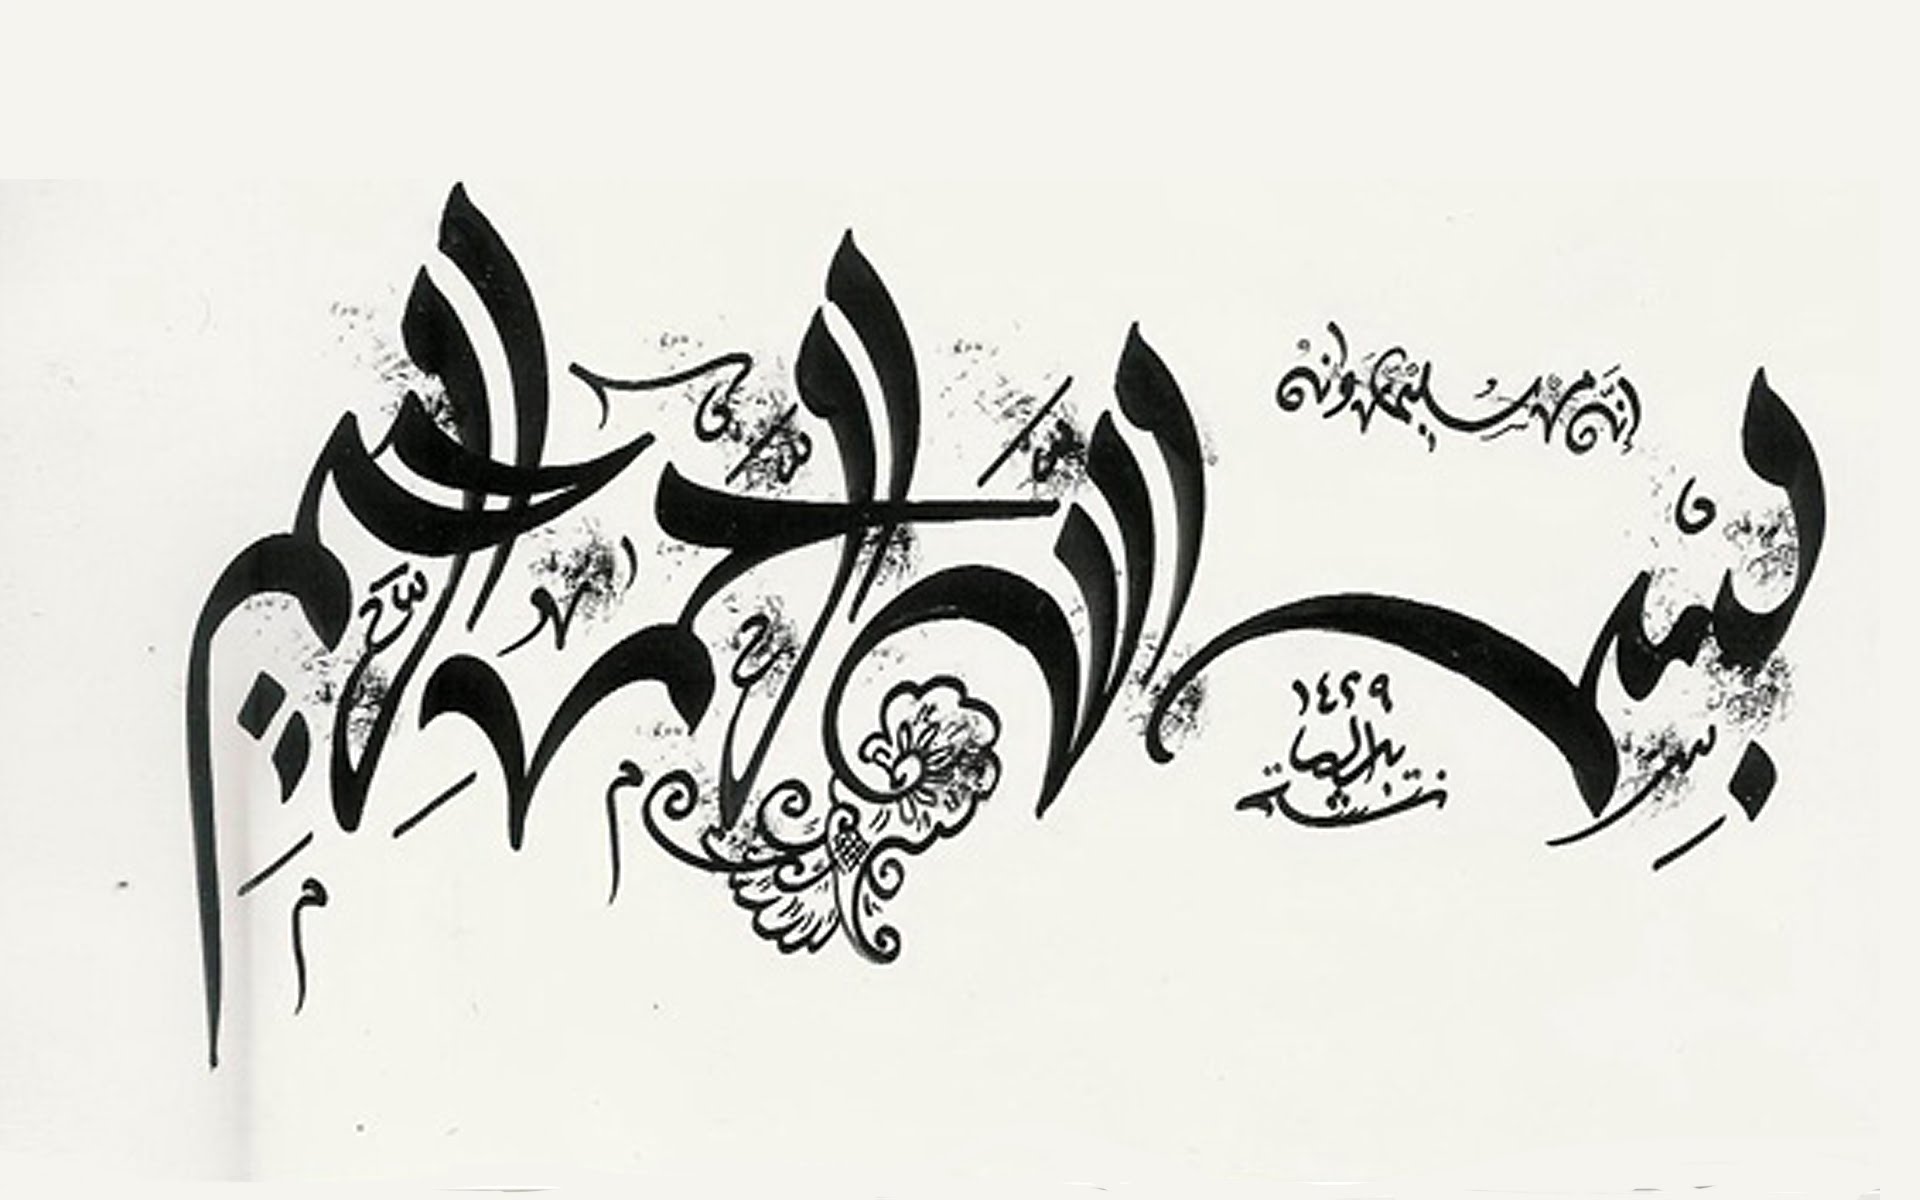 13529 7 اجمل خطوط عربية للفوتوشوب - صور خطوط عربية لبرنامج الفوتوشوب شوقة غياث